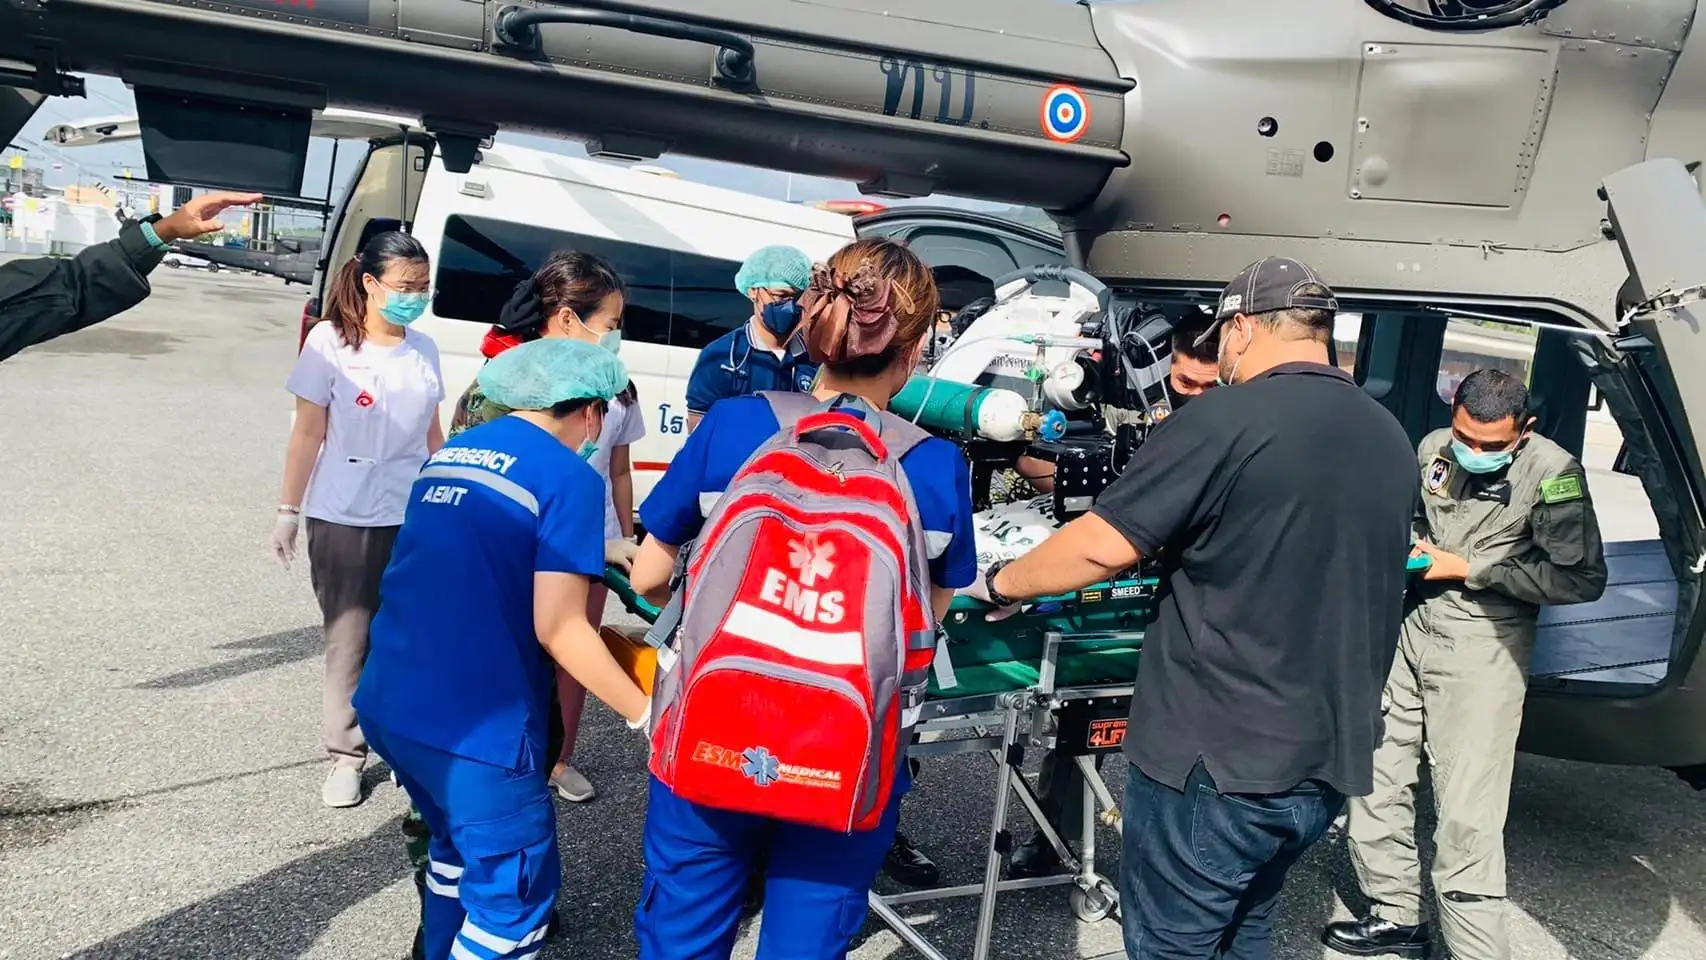 ฮ.ท.72 บินฉุกเฉิน รับผู้ป่วยชายจากเกาะหลีเป๊ะ ส่งโรงพยาบาลหาดใหญ่ HealthServ